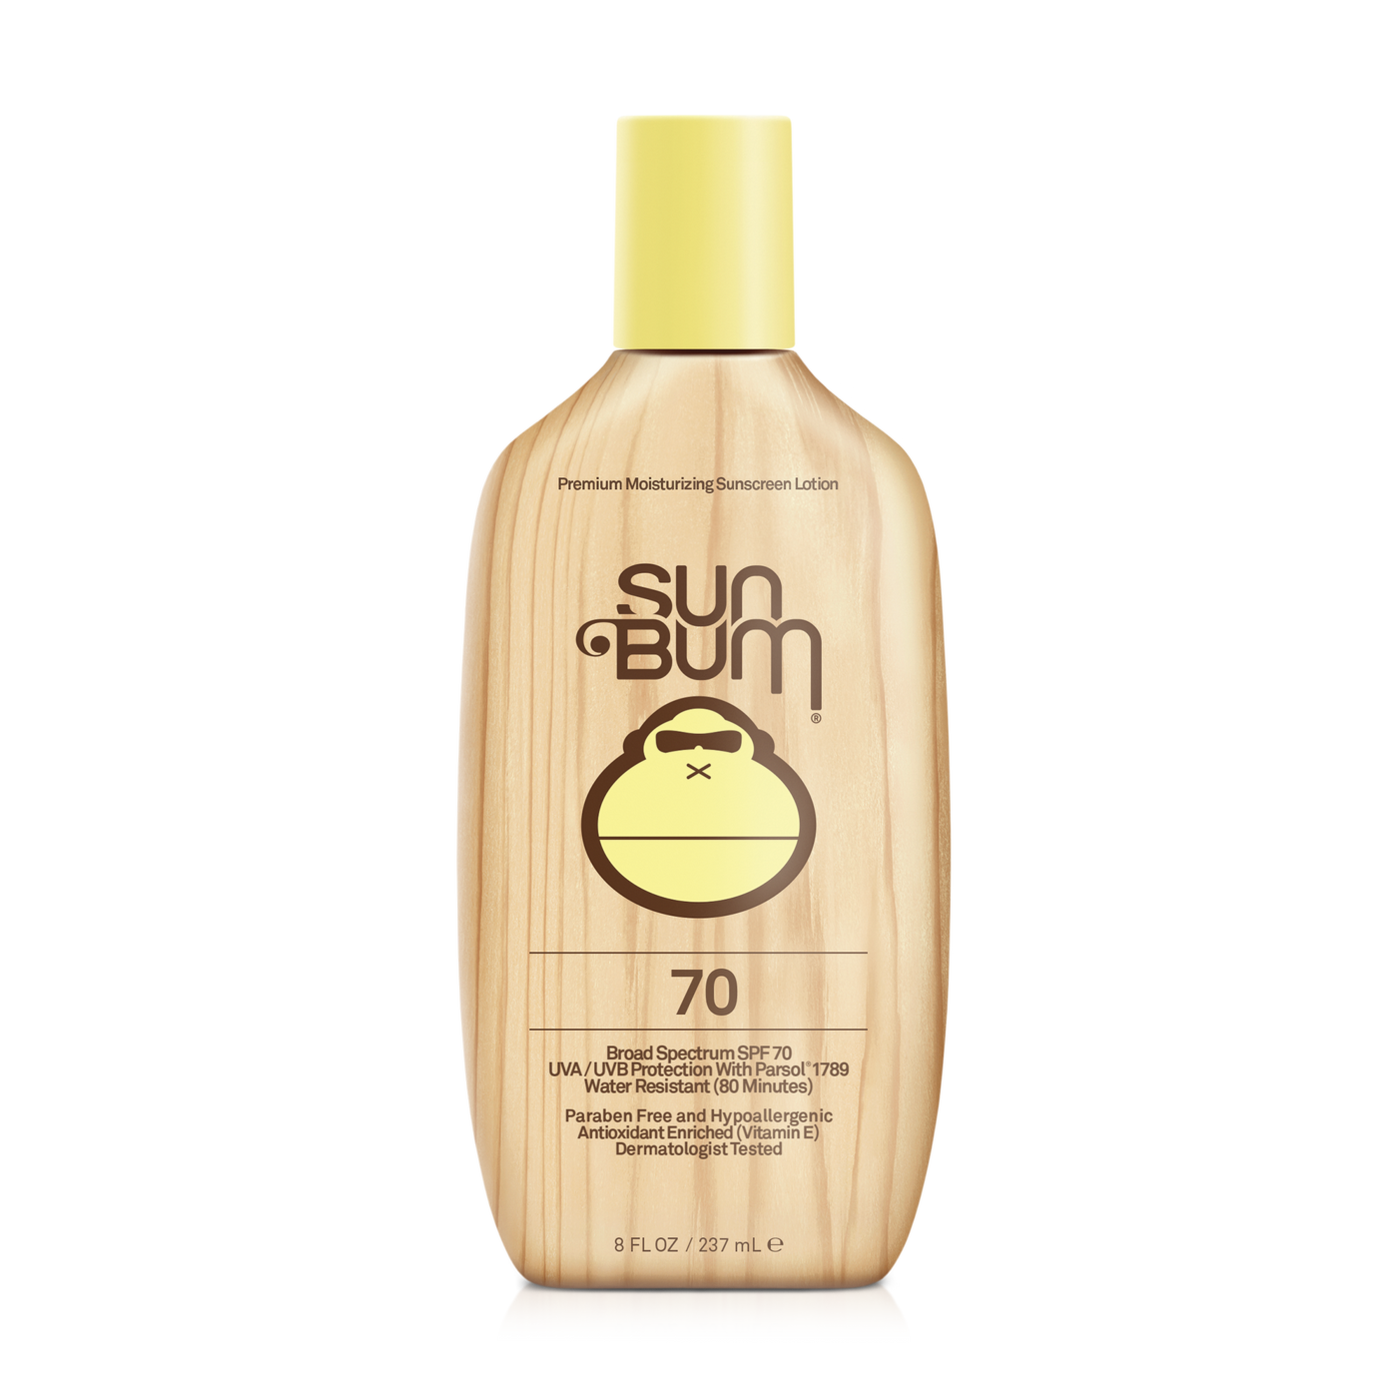 bulk sun bum sunscreen